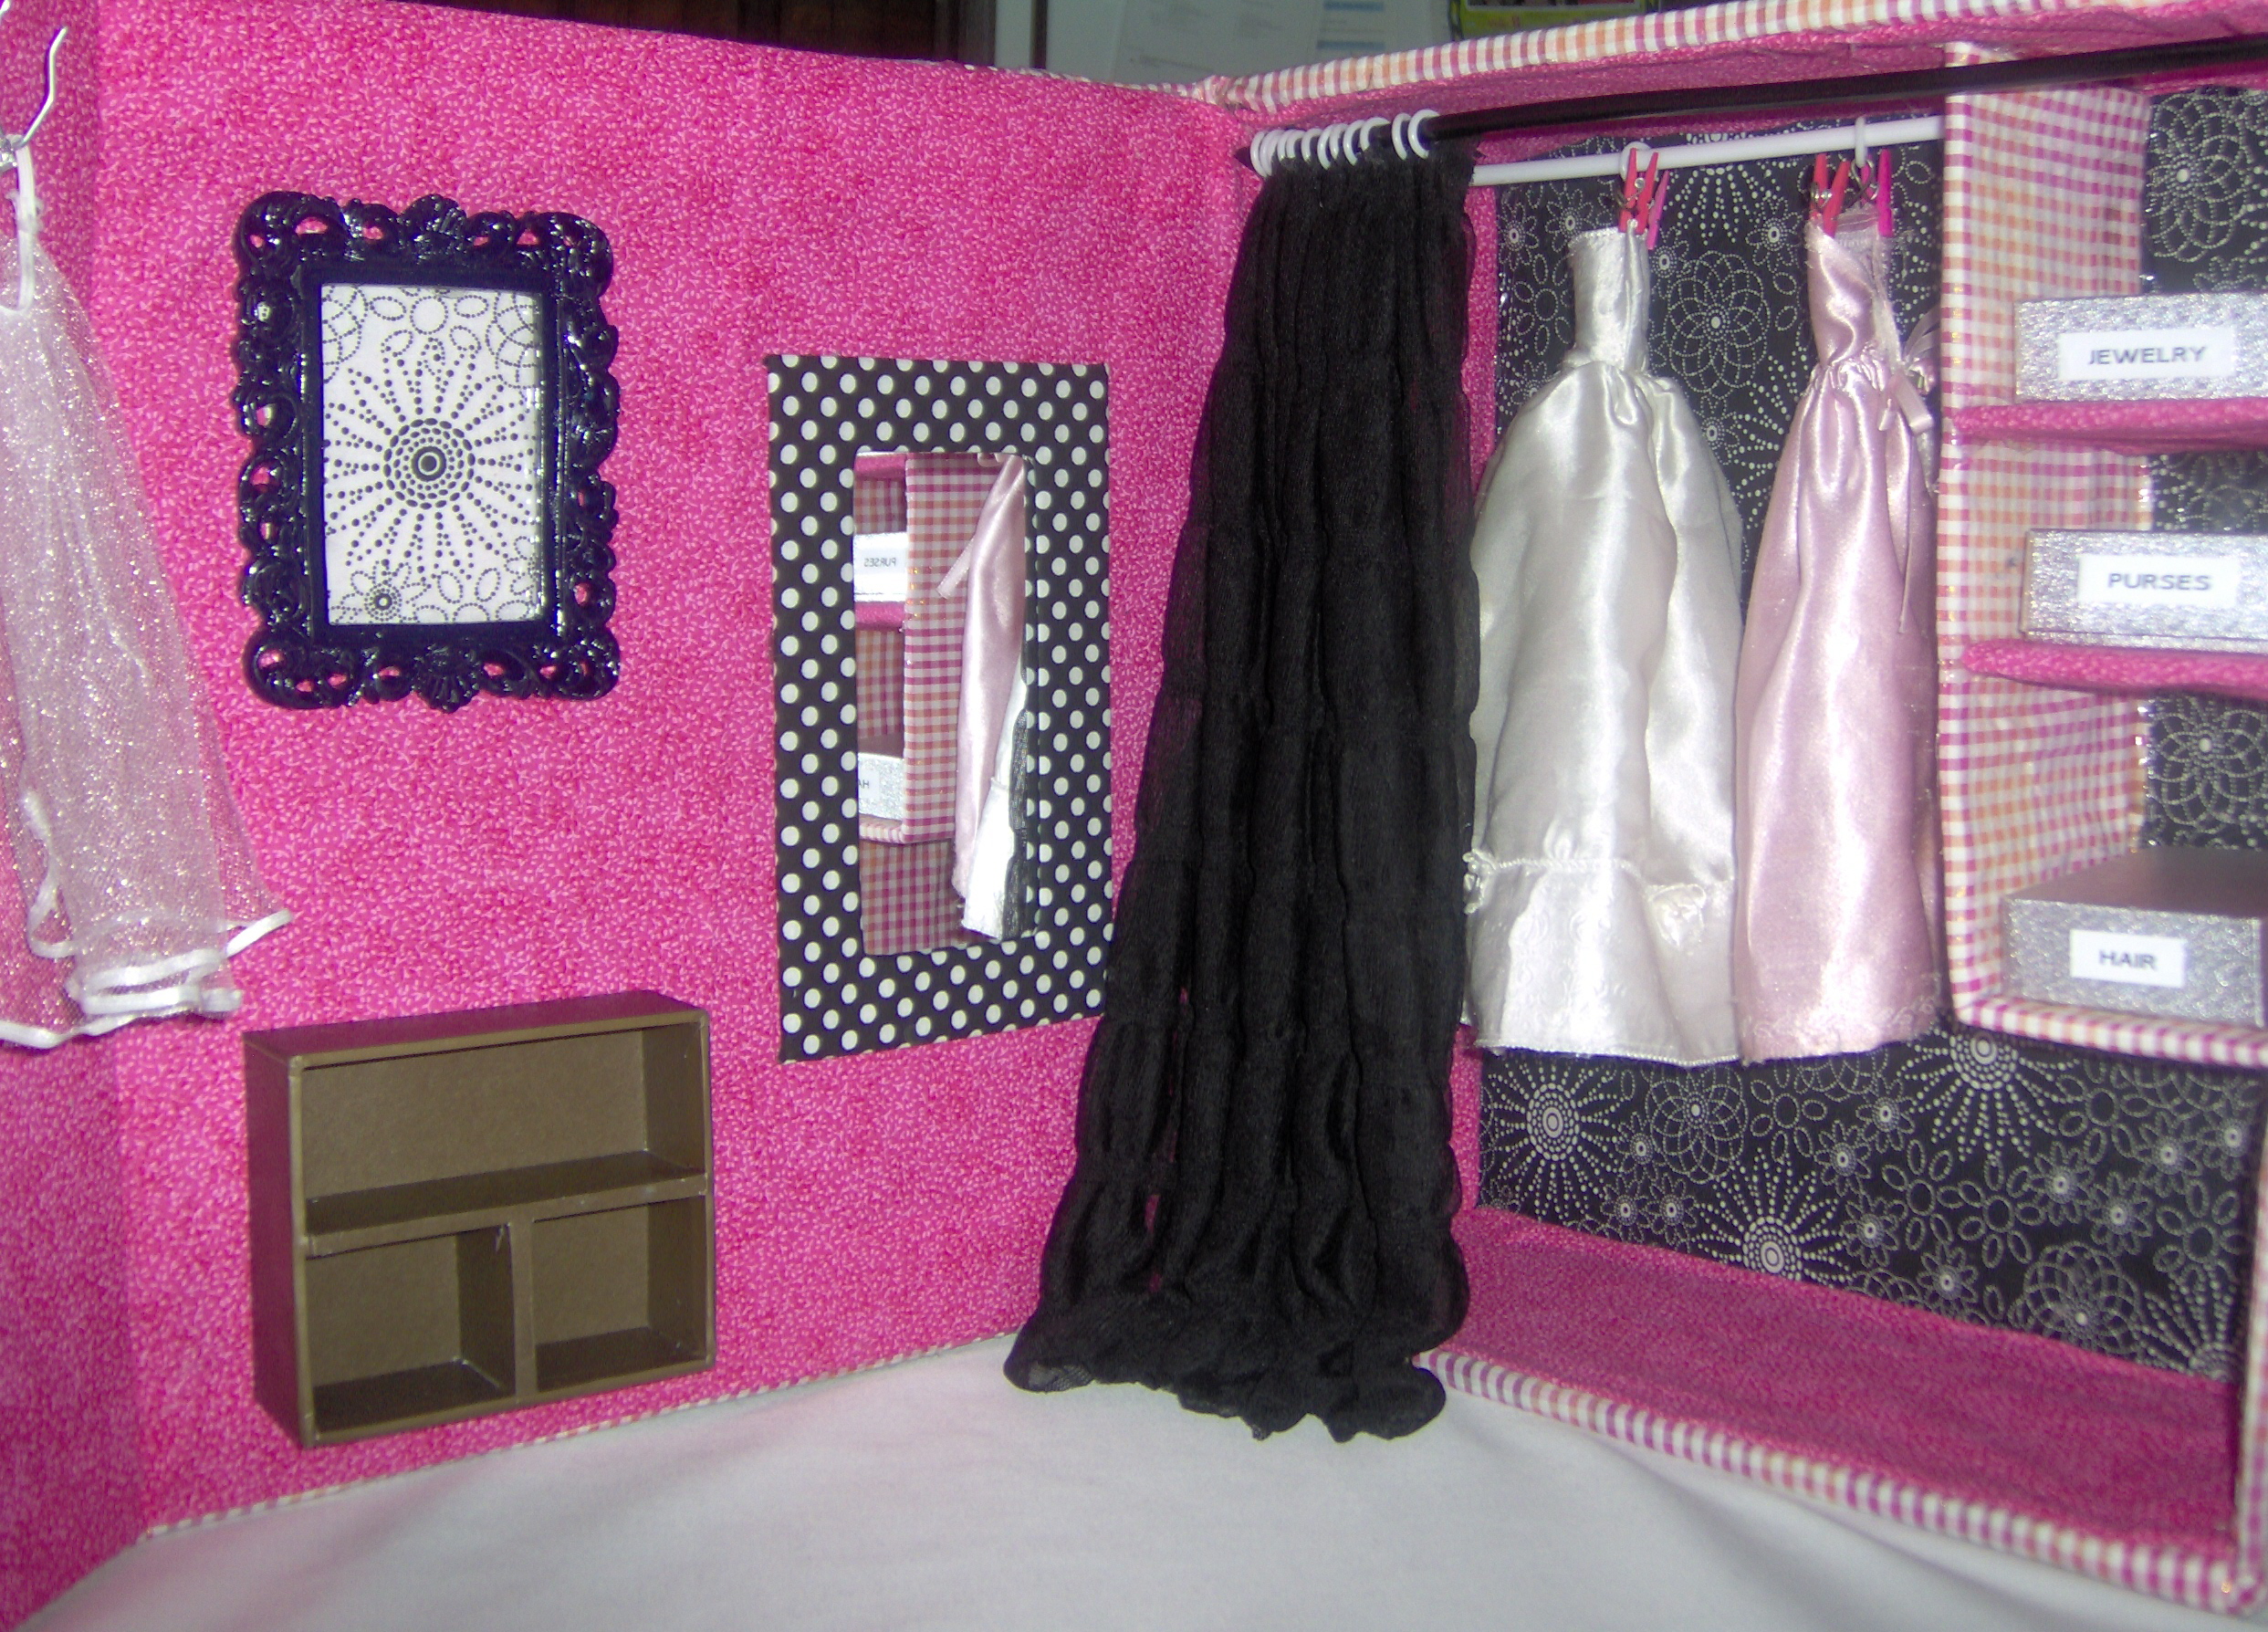  Barbie Closet